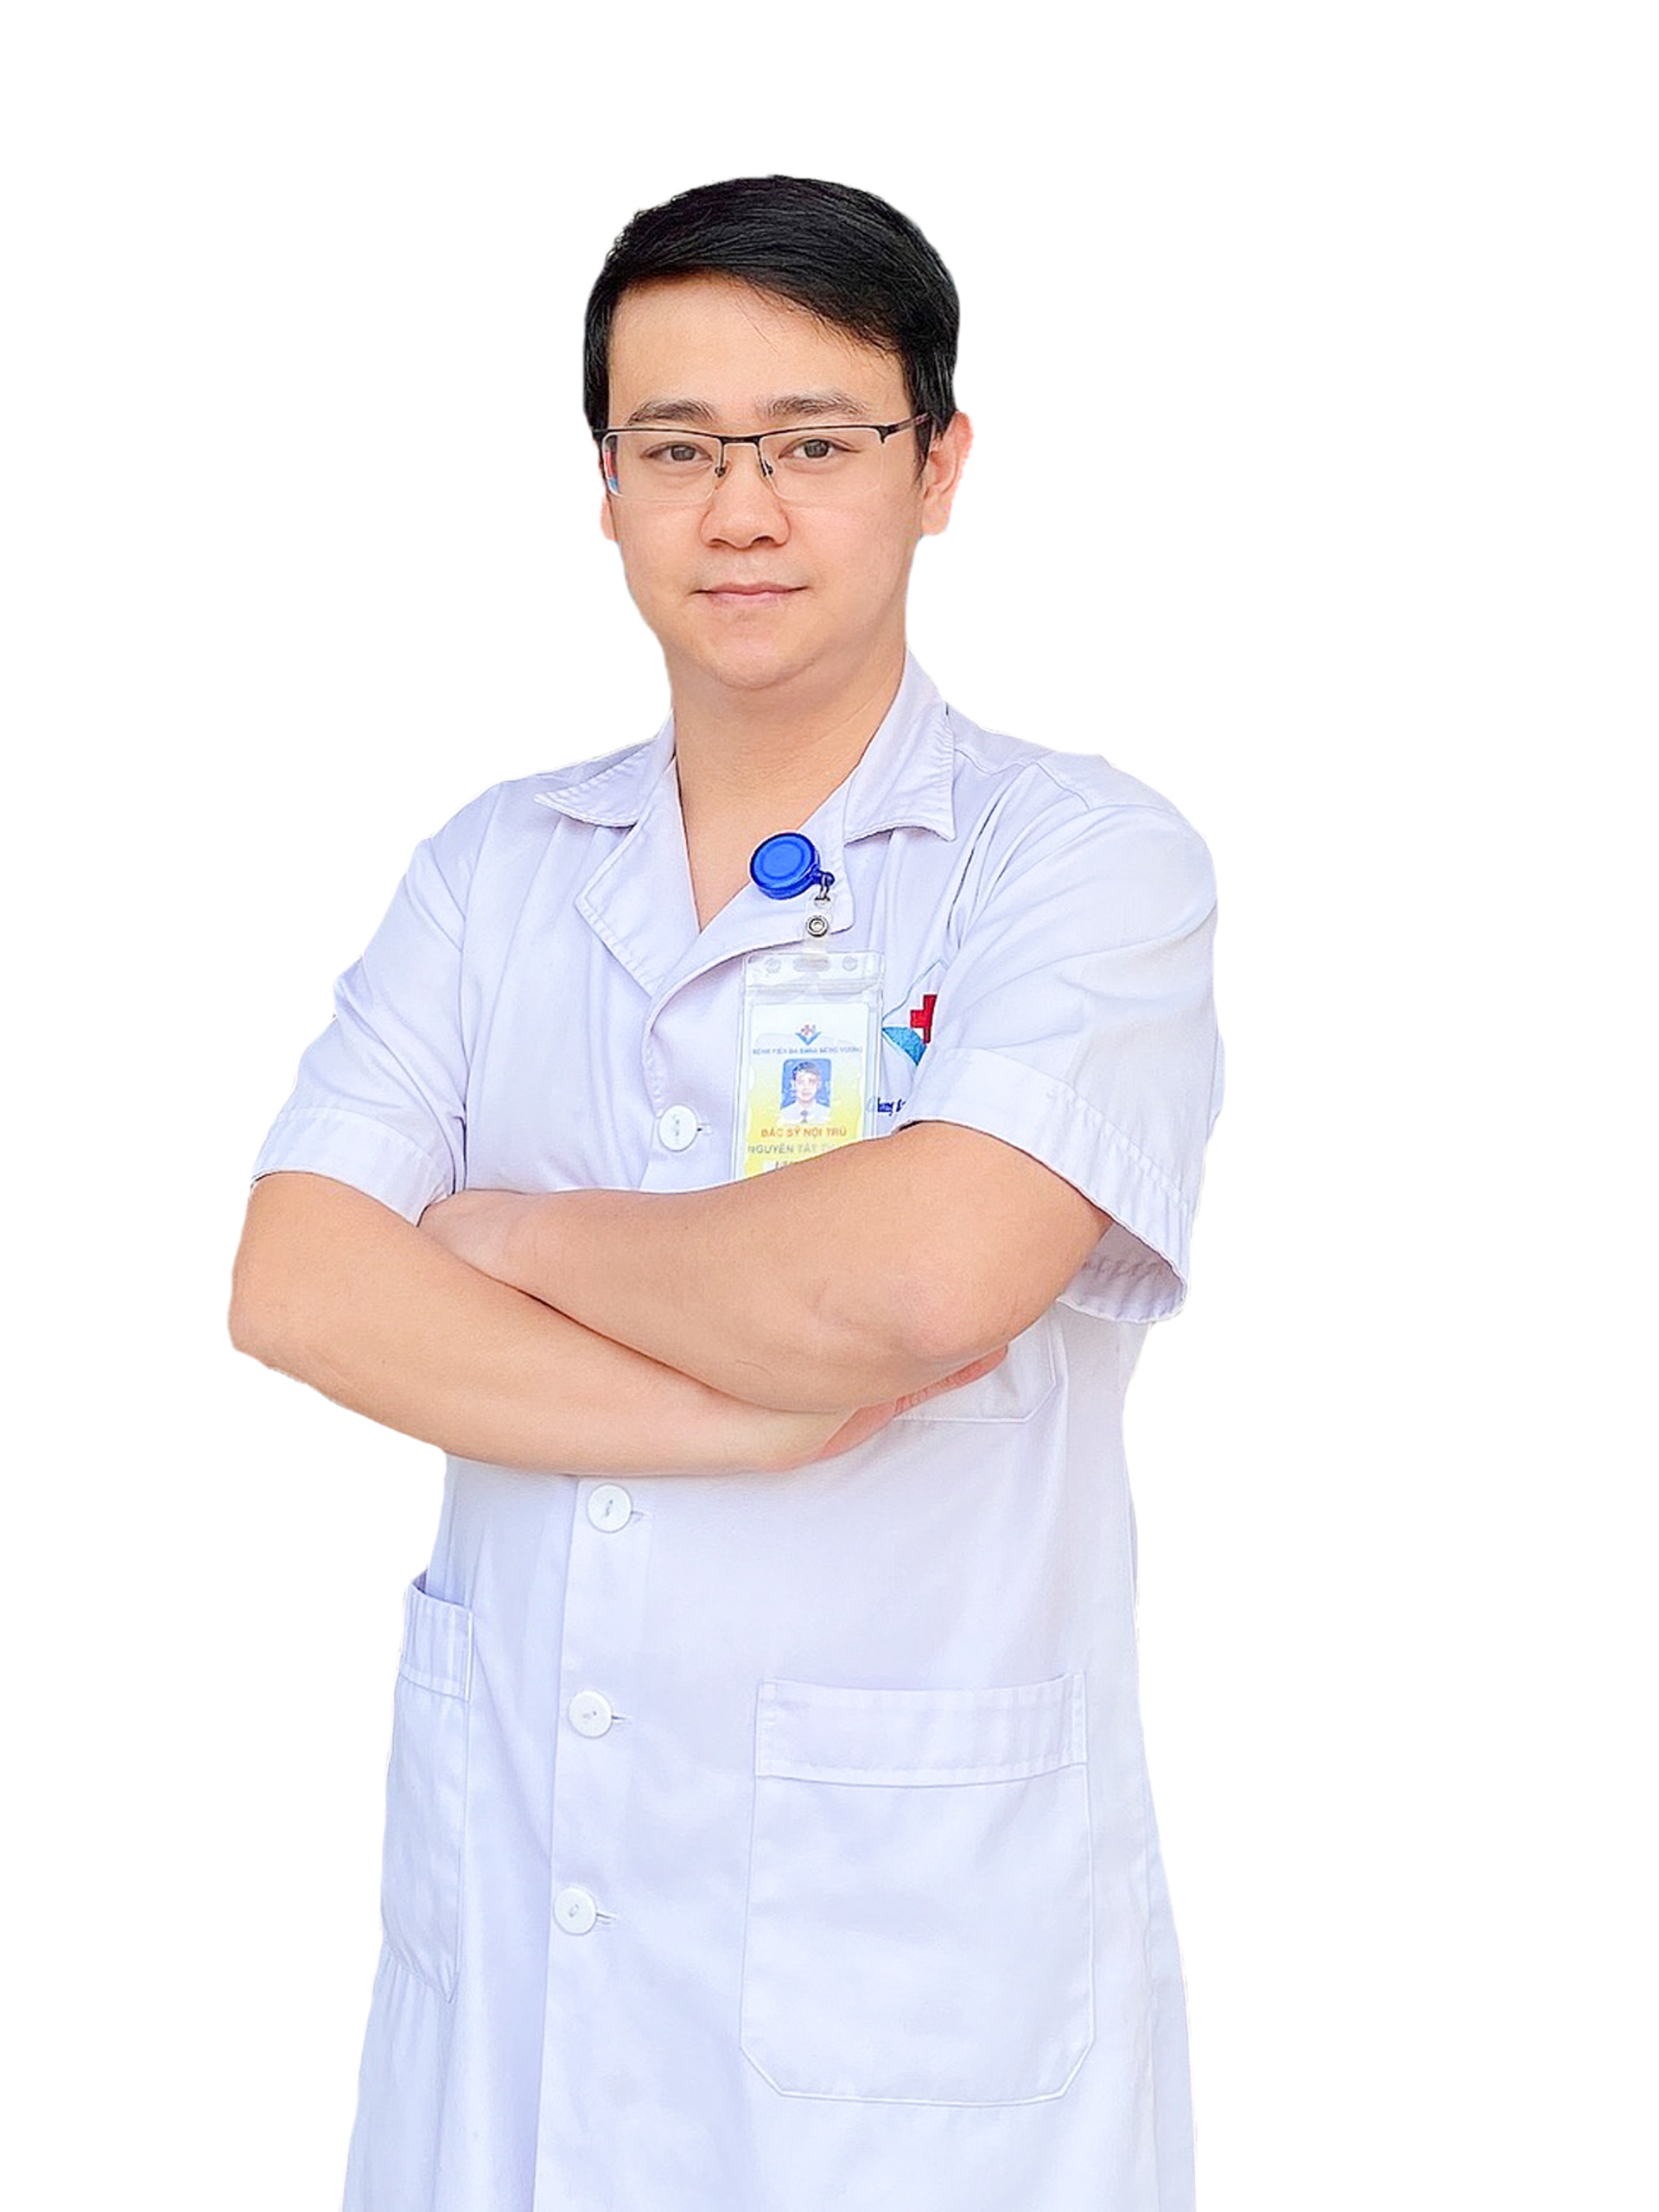 Bác sỹ nội trú Nguyễn Tất Thành